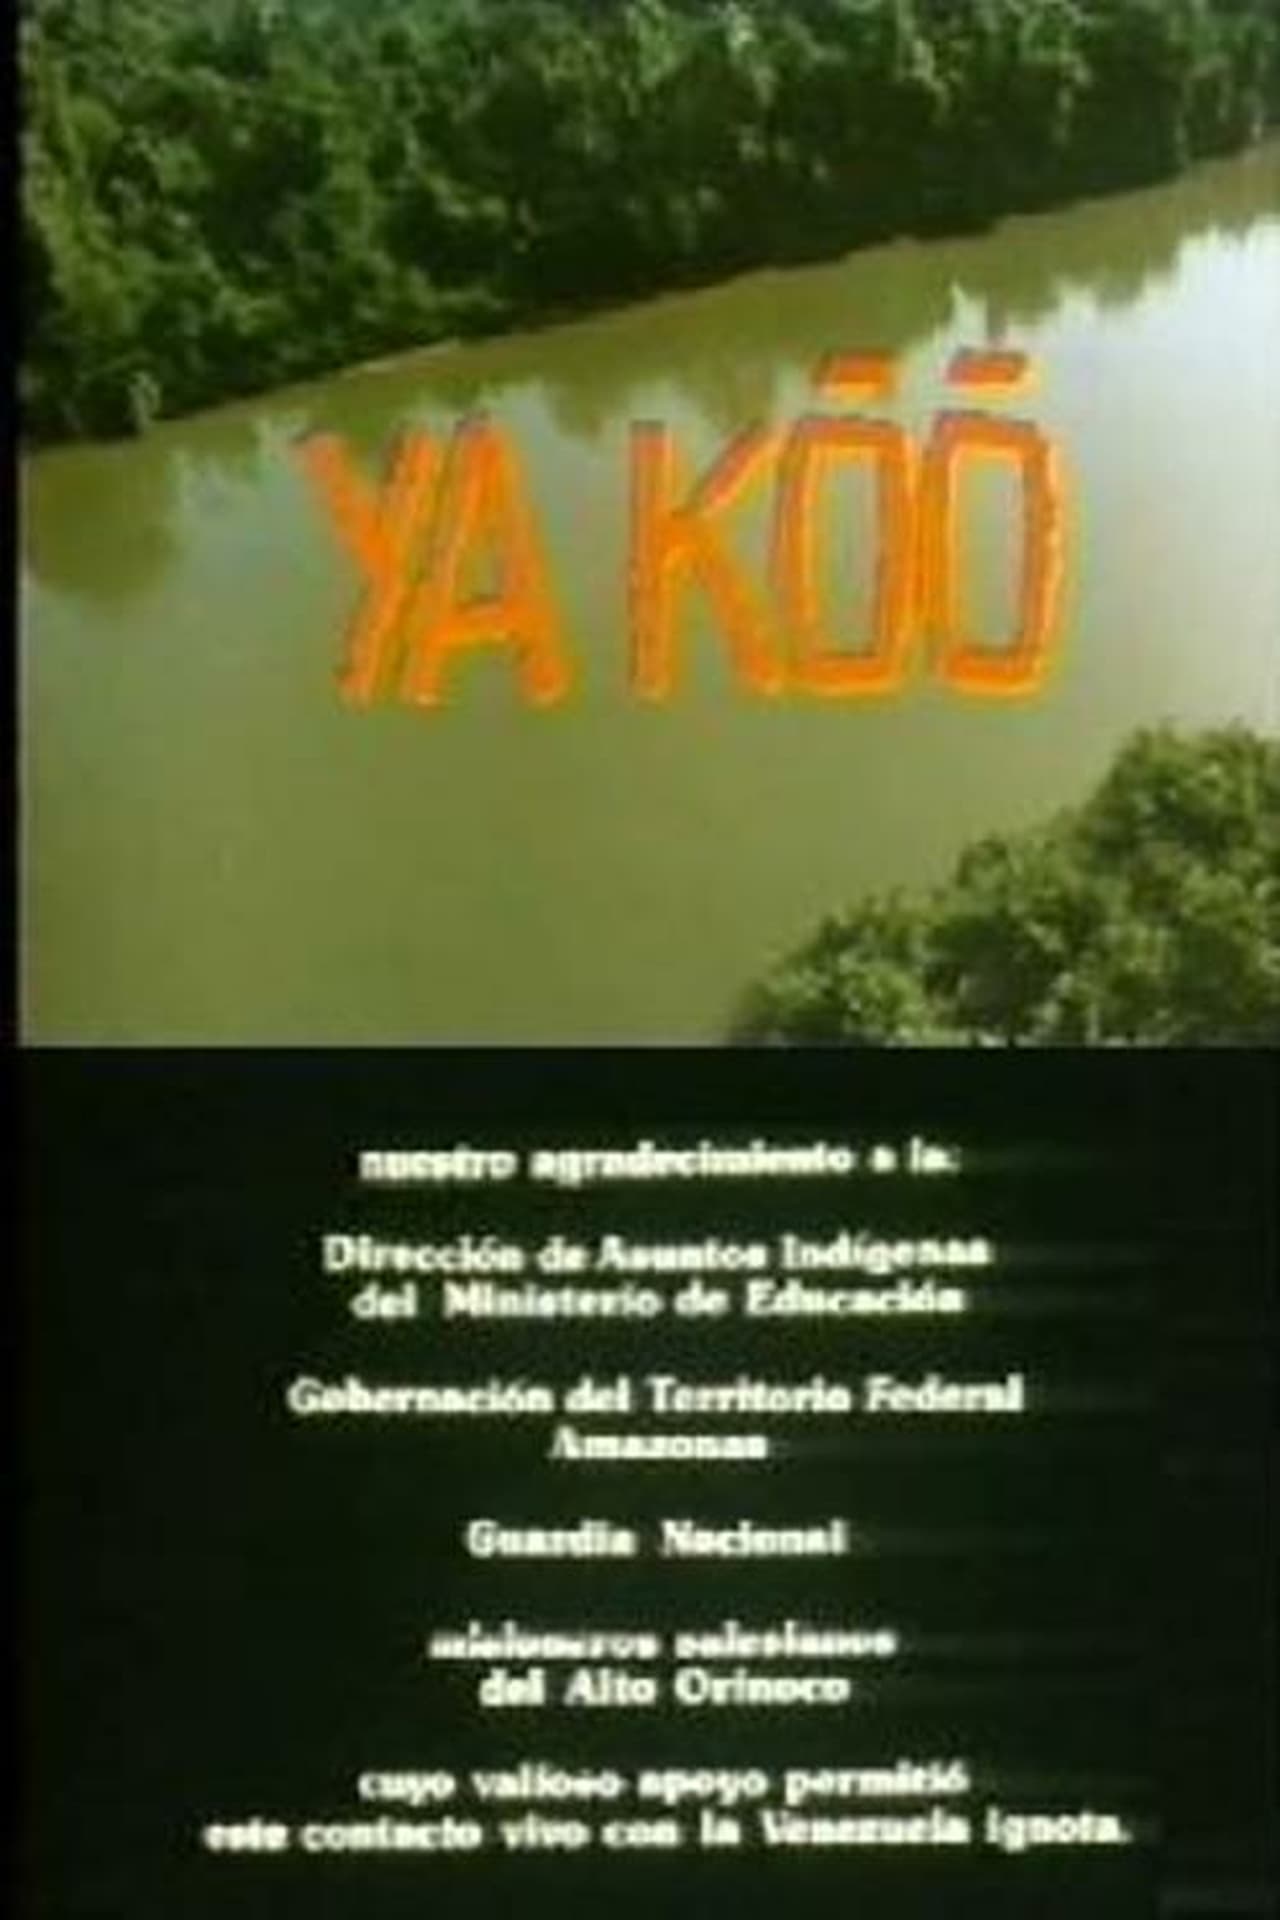 Ya Koo (1985) Screenshot 2